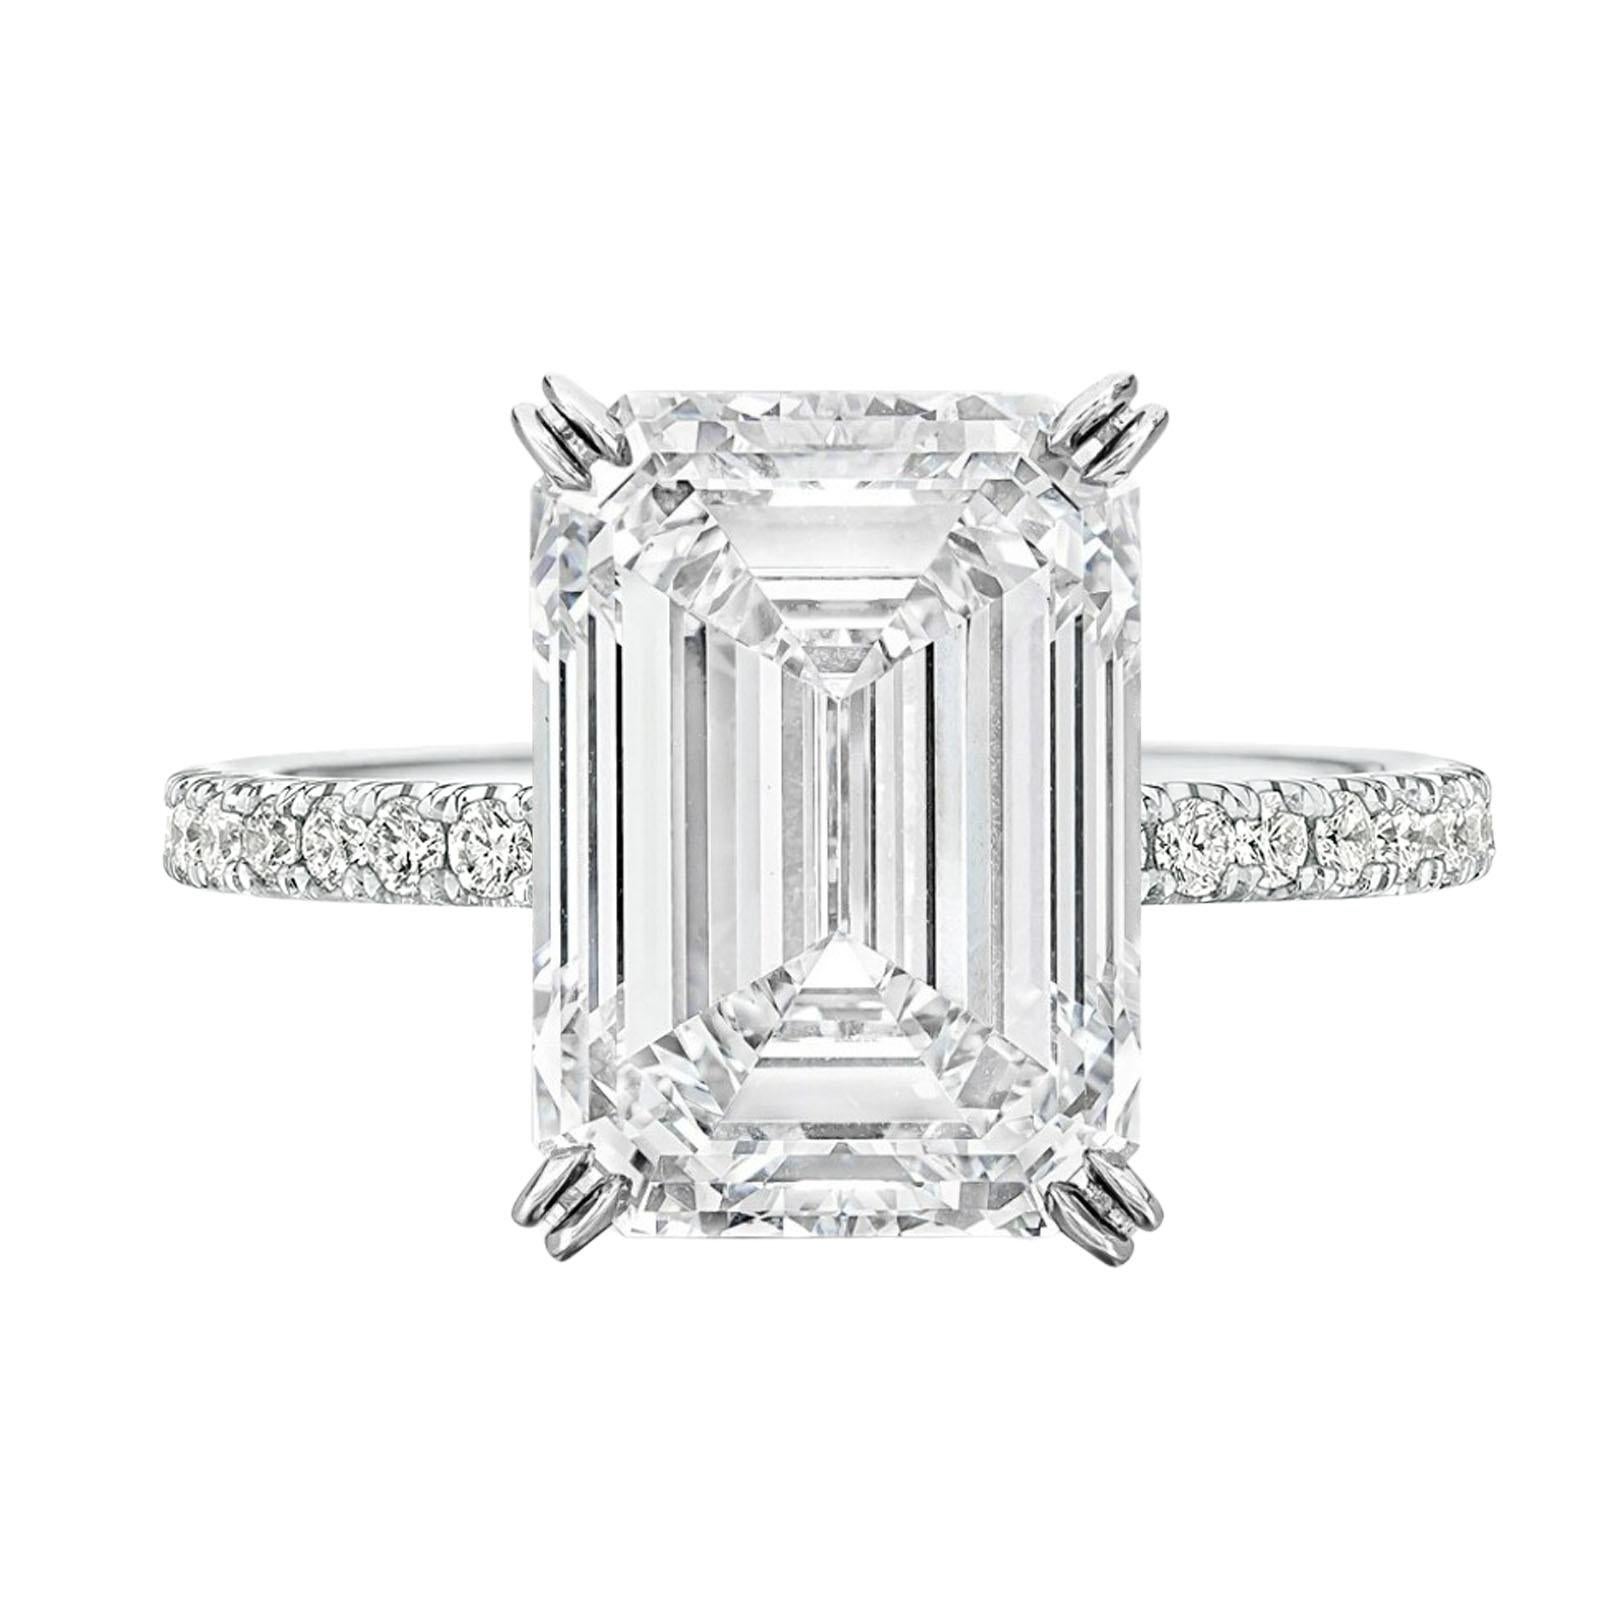 Ein Meisterwerk der Eleganz und Raffinesse: ein GIA-zertifizierter 3-Karat-Diamantring mit Smaragdschliff, der sich durch eine außergewöhnliche E-Farbe und lupenreine Reinheit auszeichnet. Dieser vom renommierten Gemological Institute of America